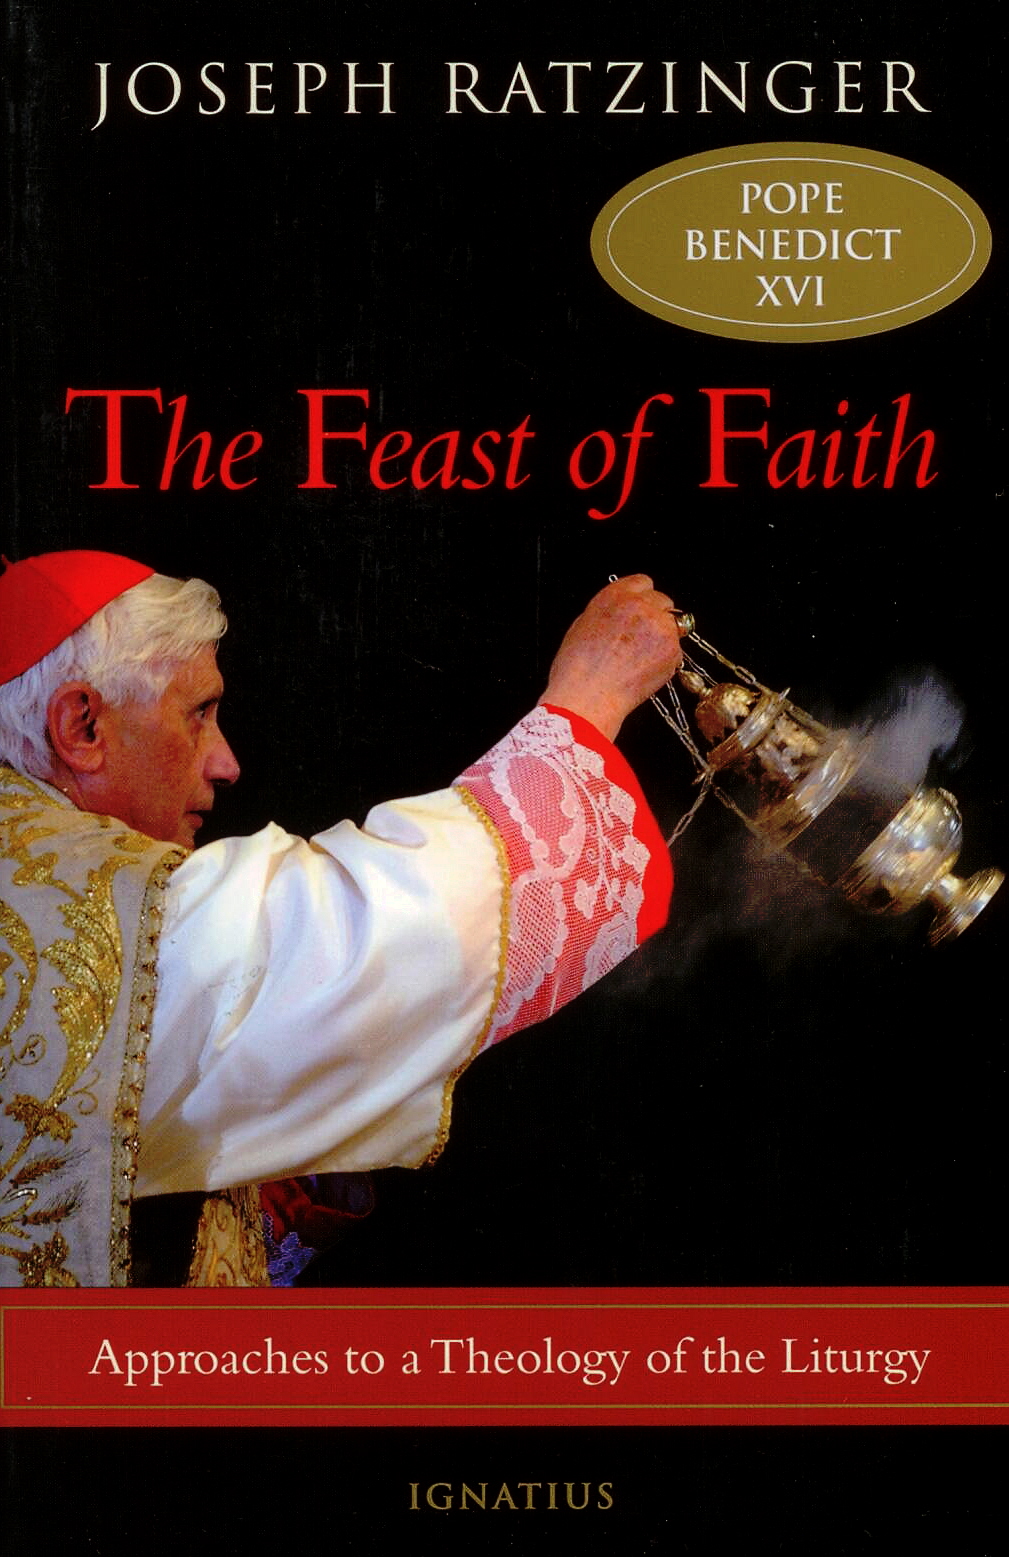 The Feast of Faith by Joseph Ratzinger